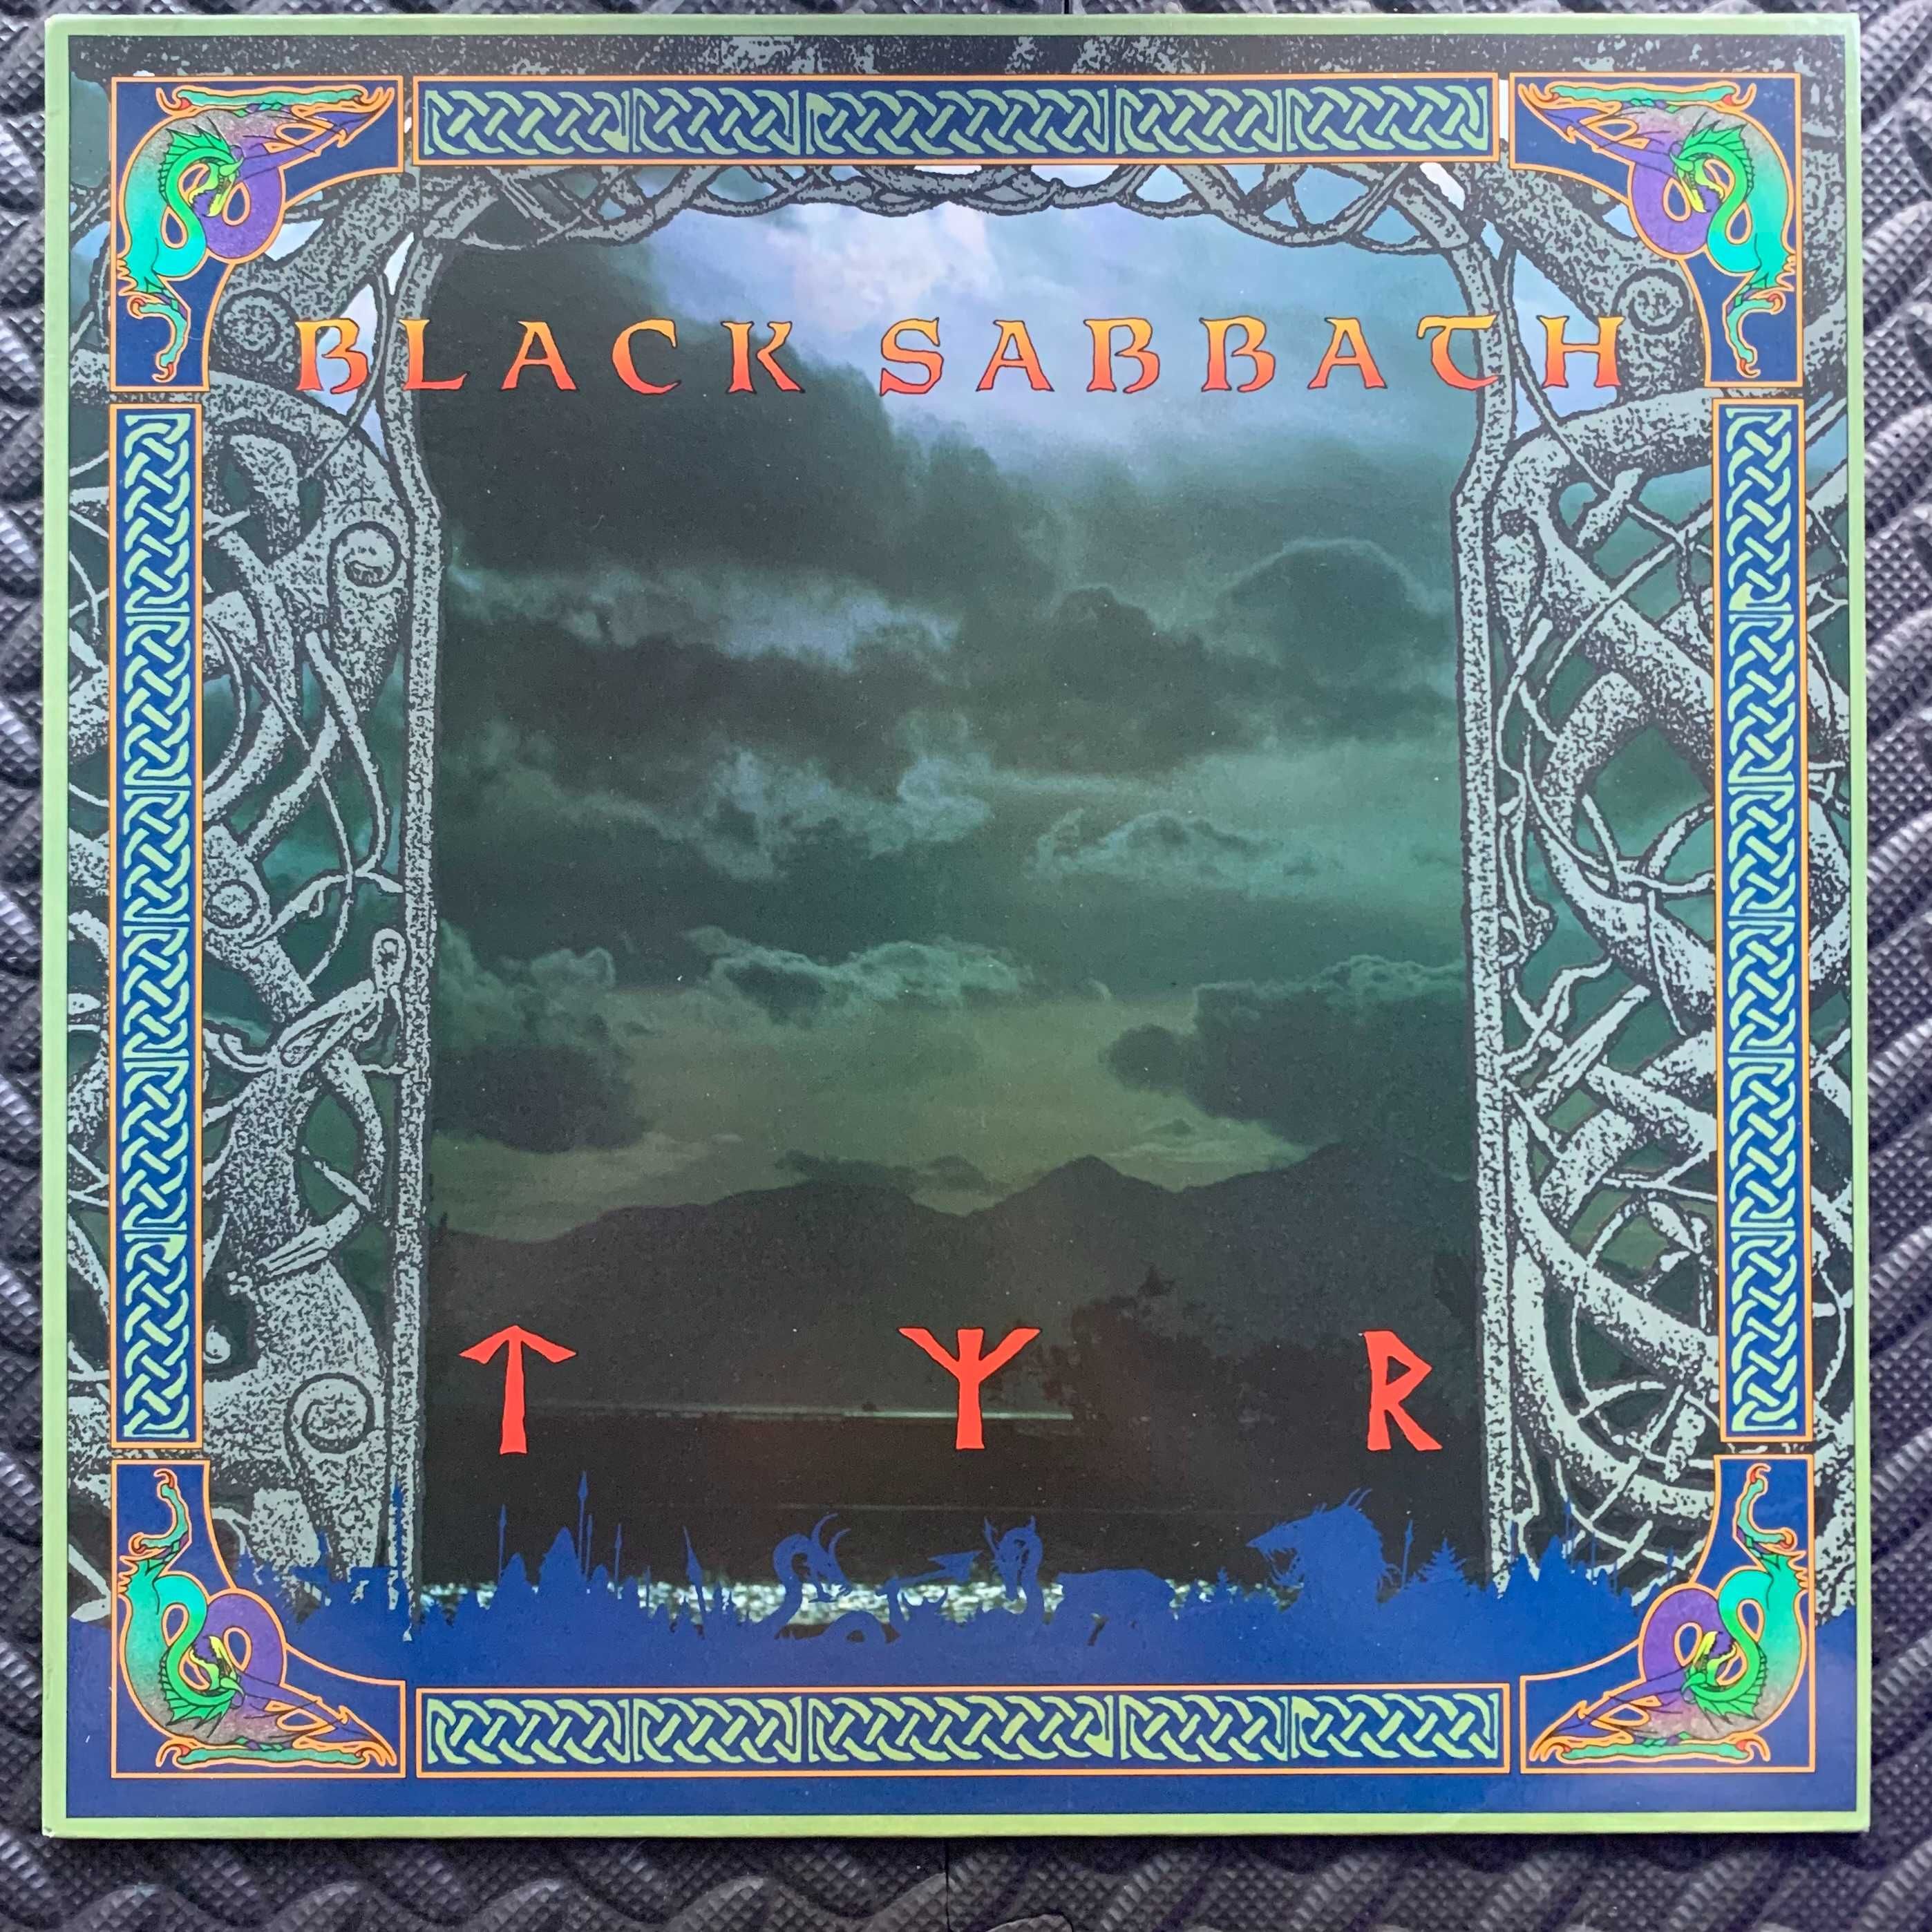 Black Sabbath – Tyr, pierwsze wydanie UK